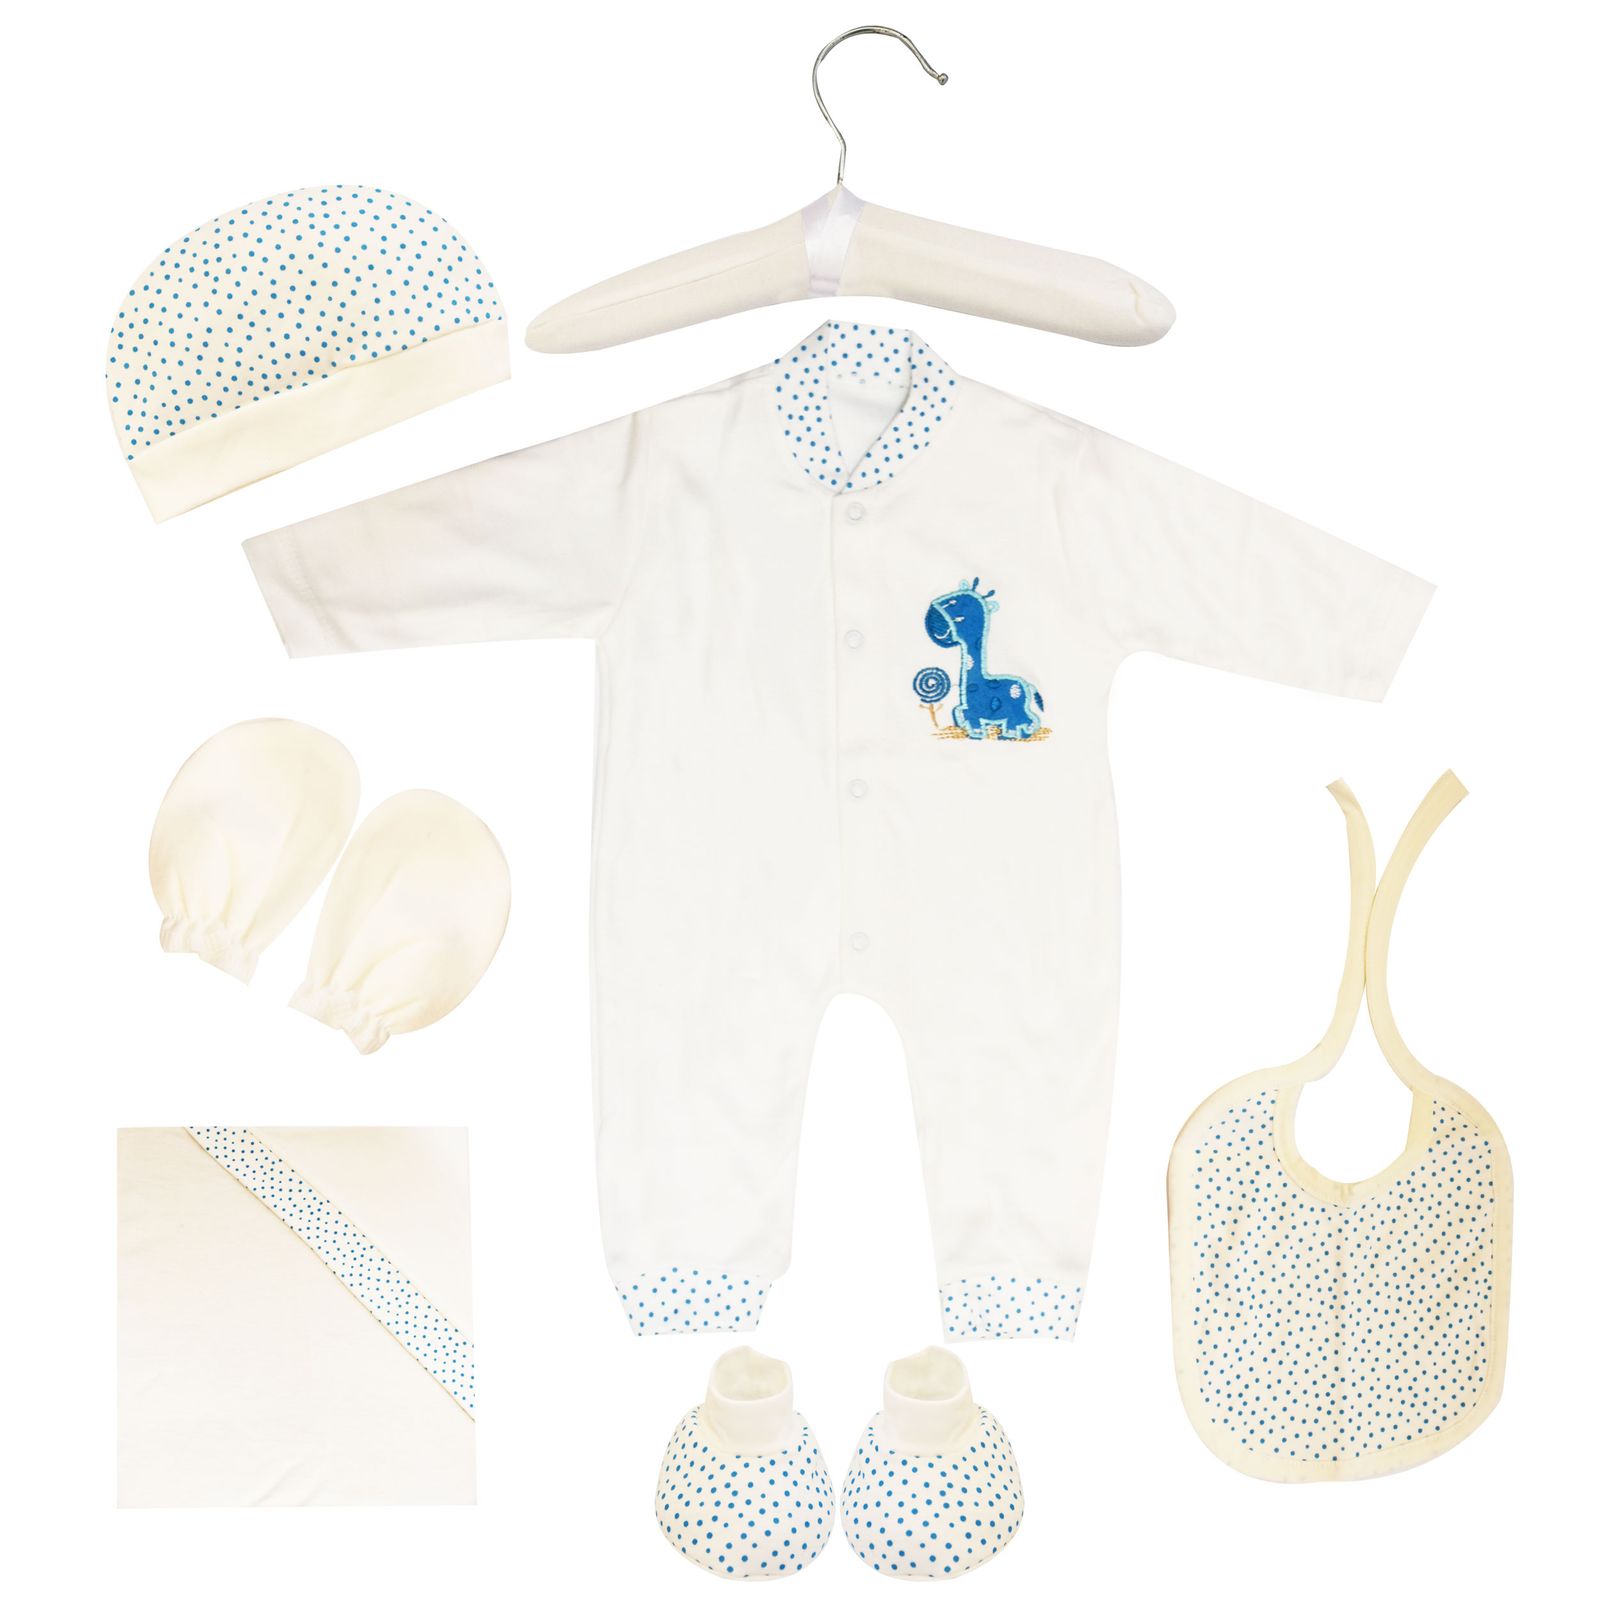  ست 7 تکه لباس نوزادی مادرکر طرح زرافه کد M454.19 -  - 9